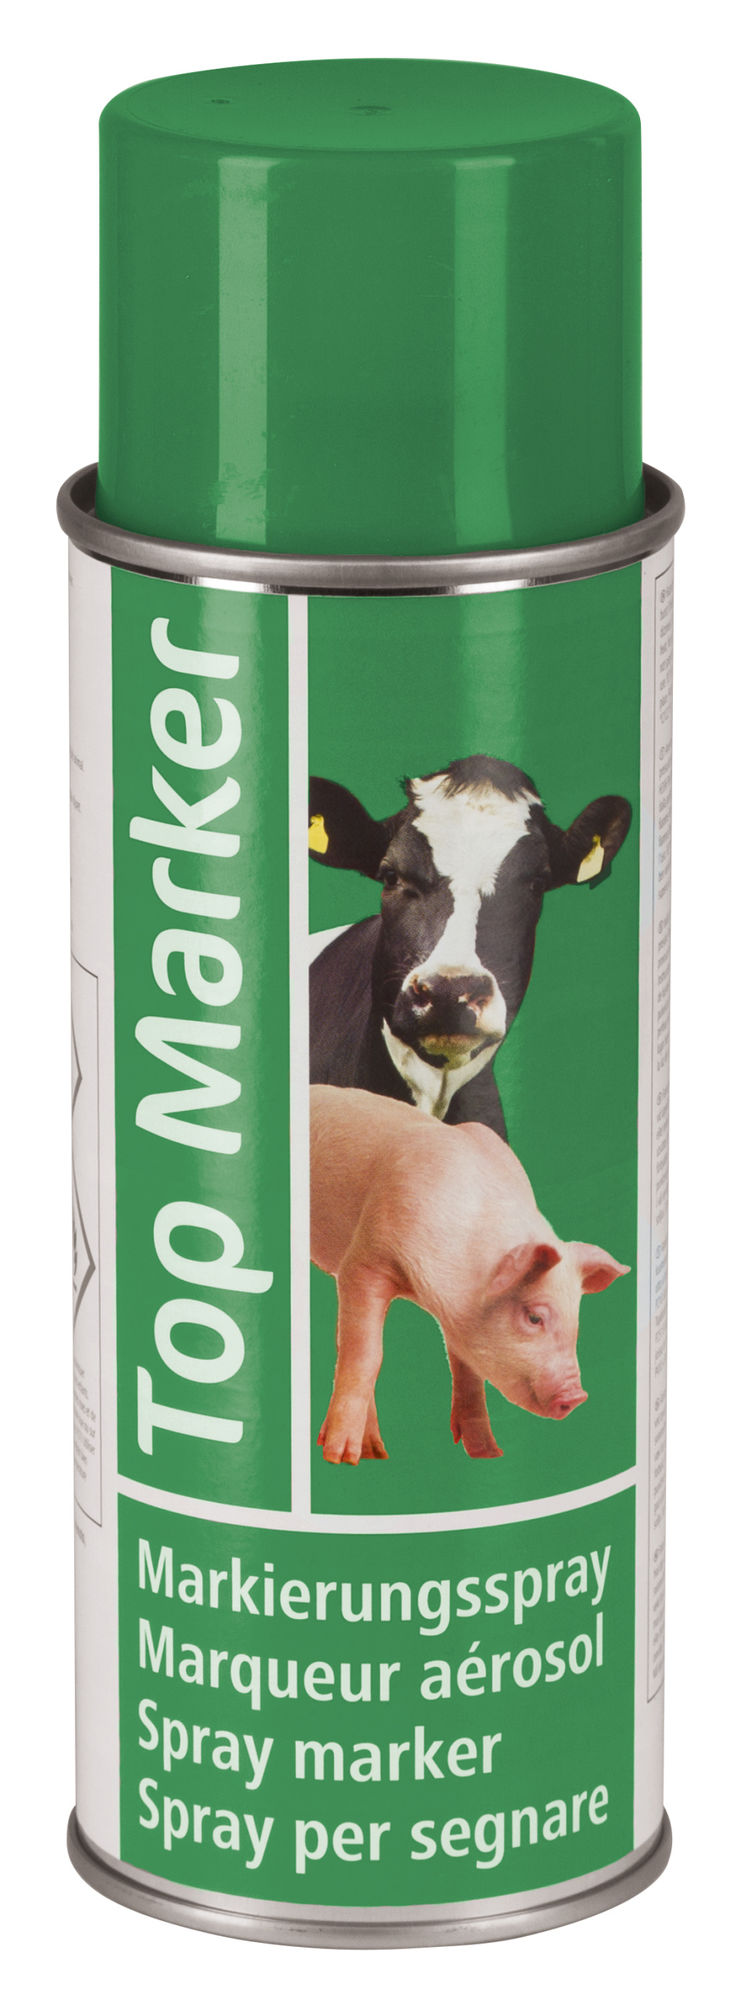 Markierungsspray TopMarker / Viehzeichenspray 200 ml -grün-